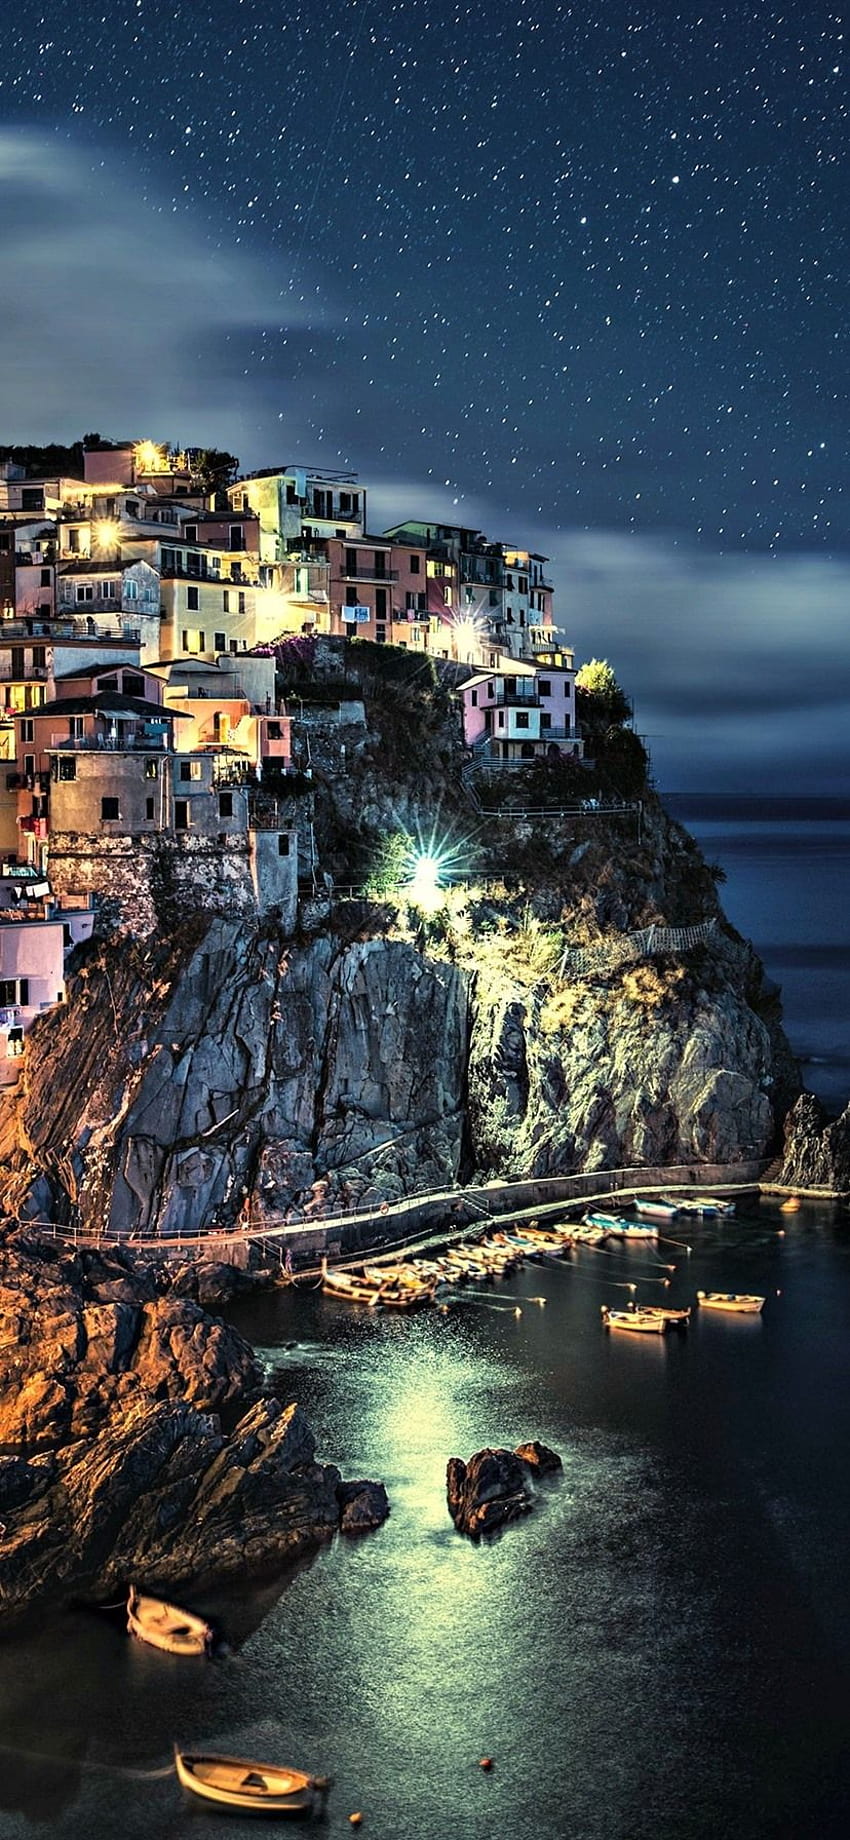 Thưởng thức vẻ đẹp tuyệt vời của vùng đất Cinque Terre của Italy trong hình ảnh đầy màu sắc và hoàn hảo. Cảnh quan tự nhiên đáng yêu cùng với những ngôi nhà màu sắc tươi tắn trên dãy núi sẽ khiến bạn giật mình và say đắm. 